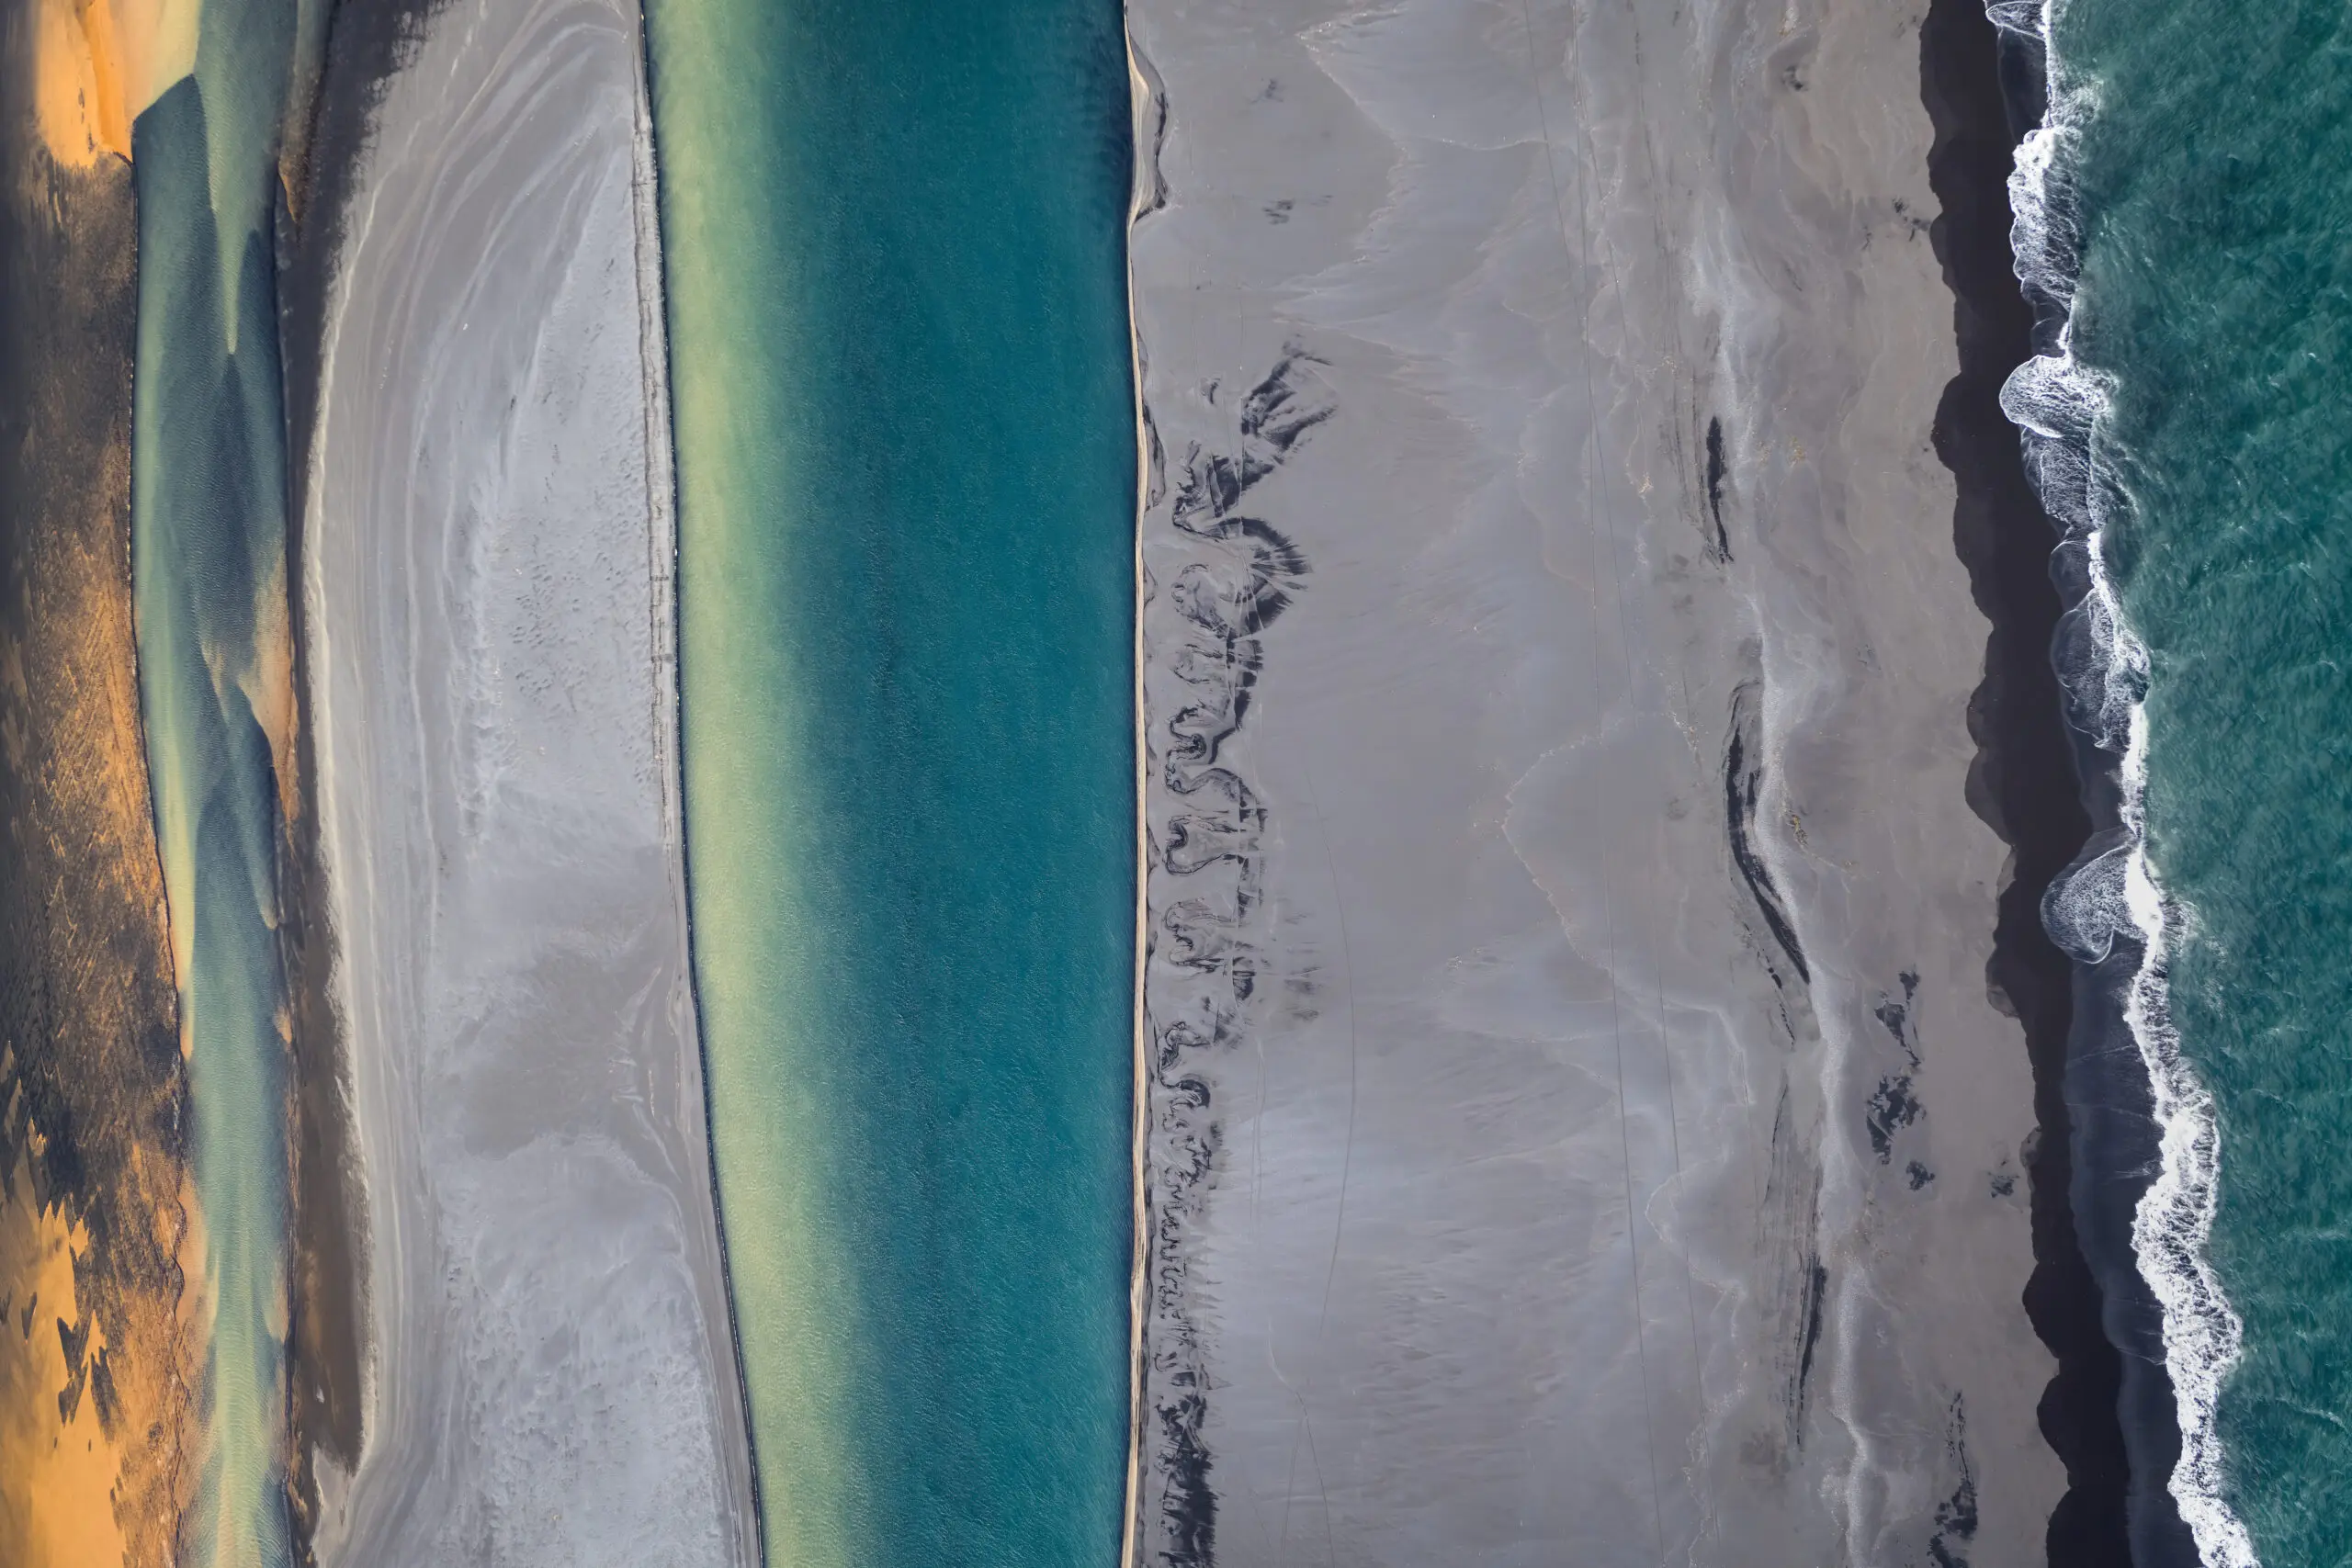 Wandbild (6322) Icelandic coastline by Gerald Macua,1x.com präsentiert: Wasser,Kreatives,Details und Strukturen,Abstrakt,Natur,Steine,Sonstige Naturdetails